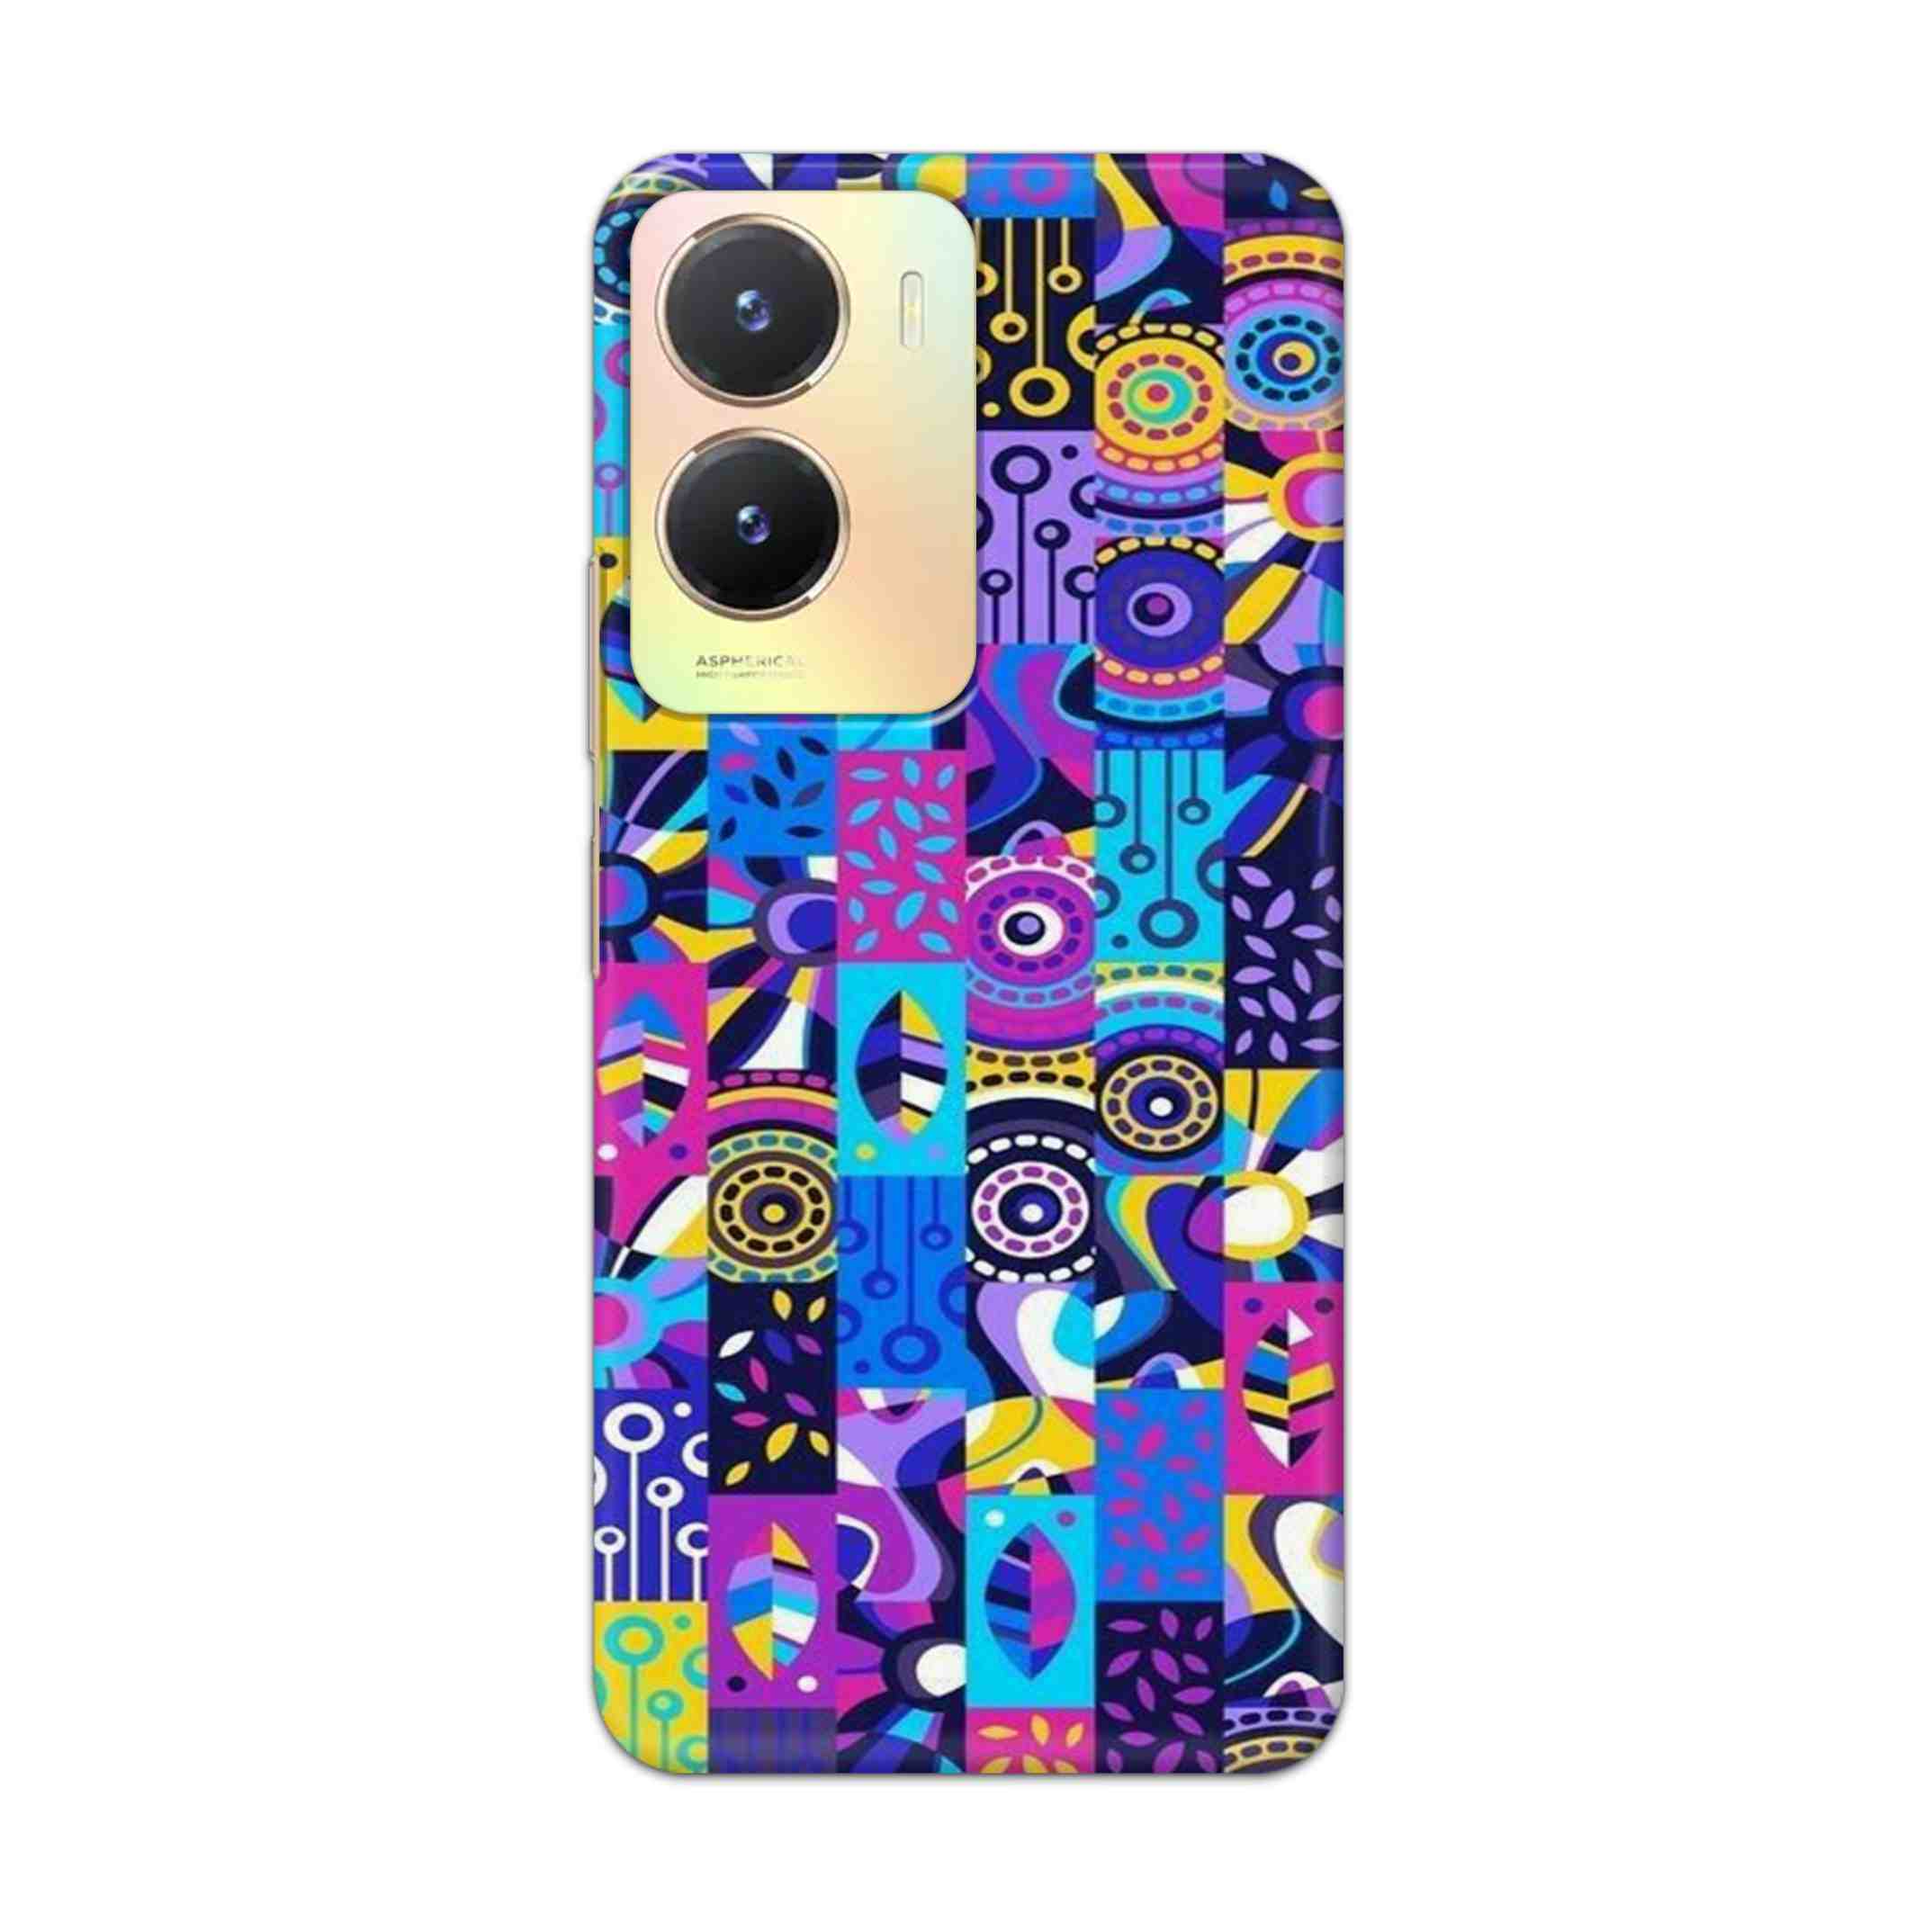 Buy Rainbow Art Hard Back Mobile Phone Case Cover For Vivo T2x Online